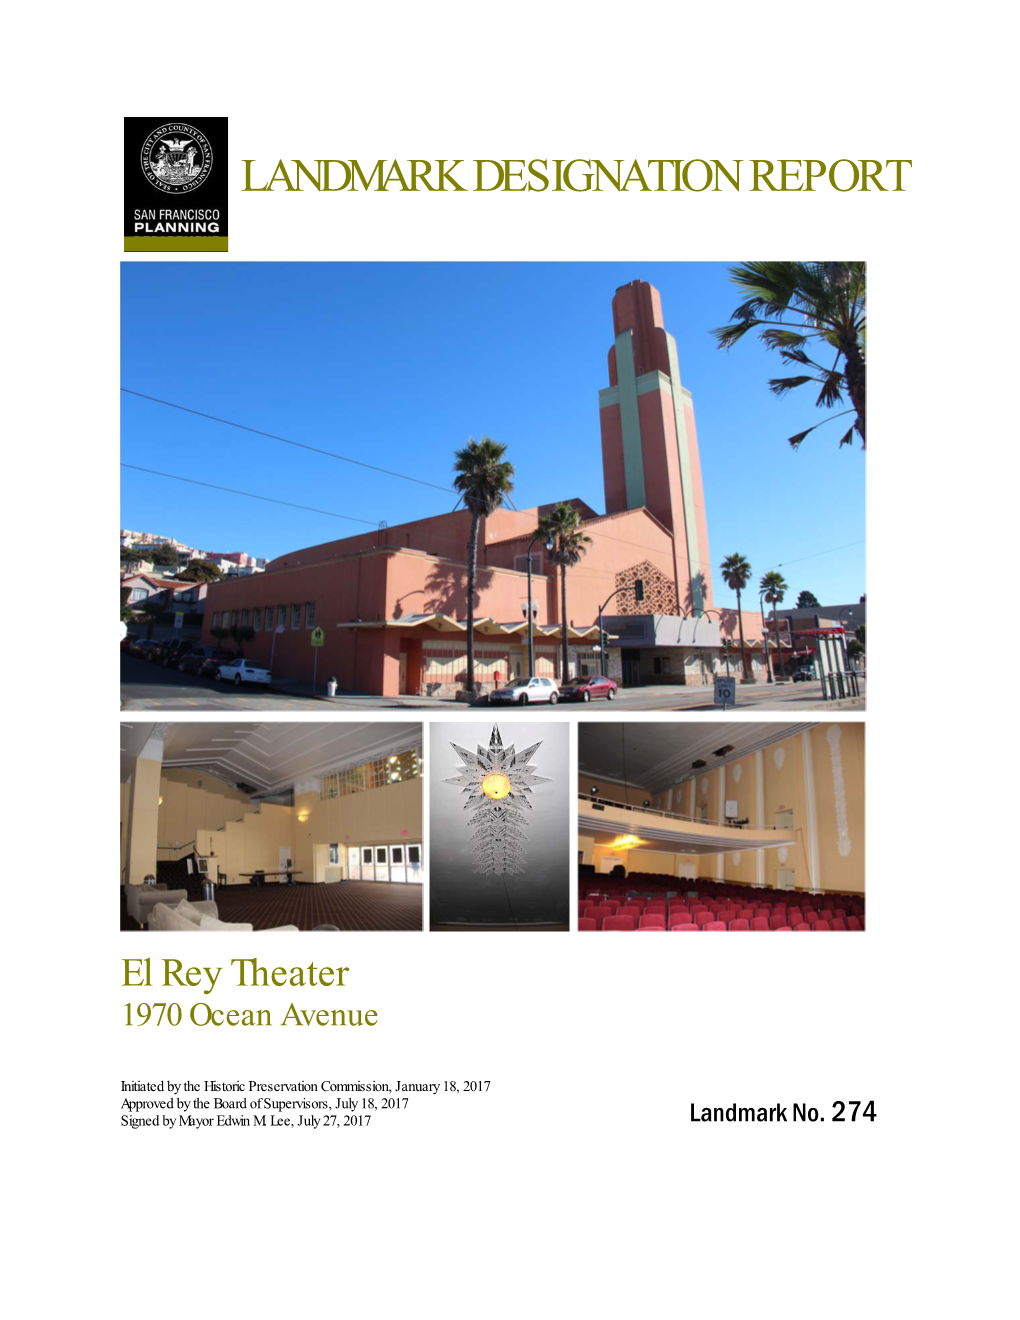 El Rey Theater Landmark Designation Report